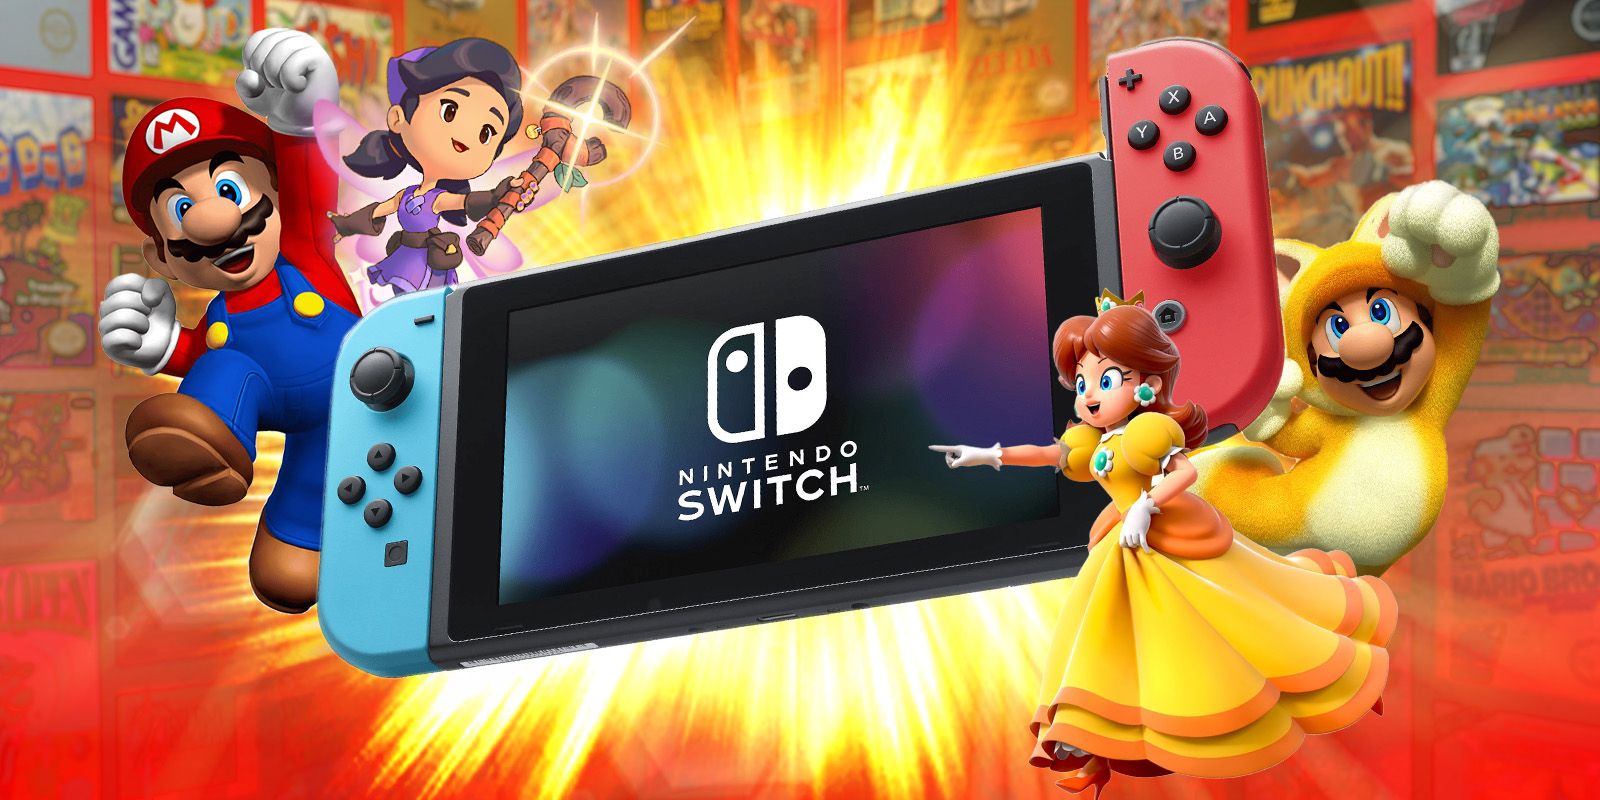 Las últimas noticias sobre Nintendo Switch 2 podrían ser algo bueno